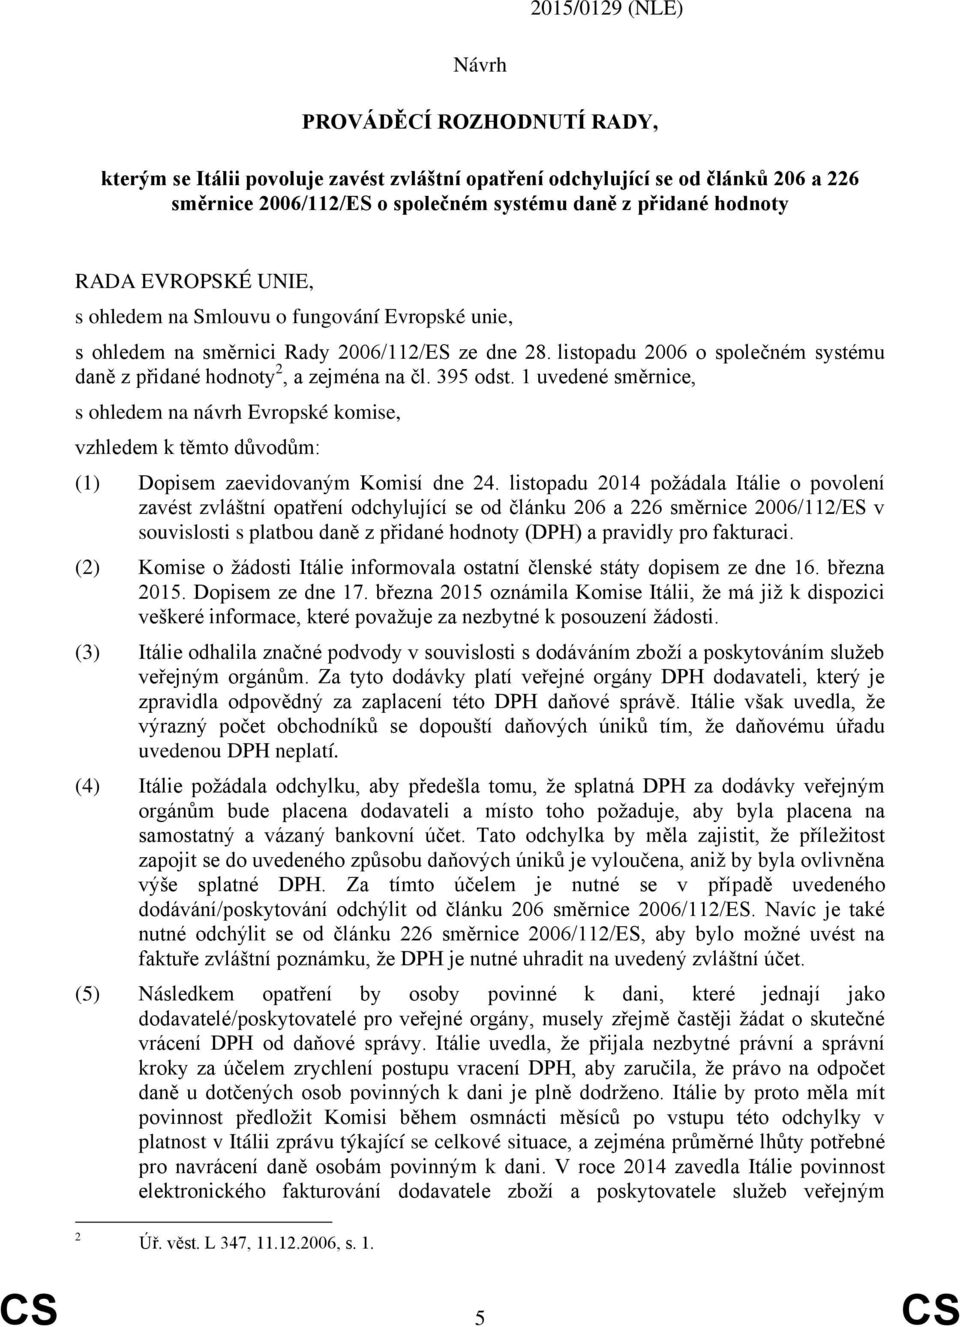 395 odst. 1 uvedené směrnice, s ohledem na návrh Evropské komise, vzhledem k těmto důvodům: (1) Dopisem zaevidovaným Komisí dne 24.